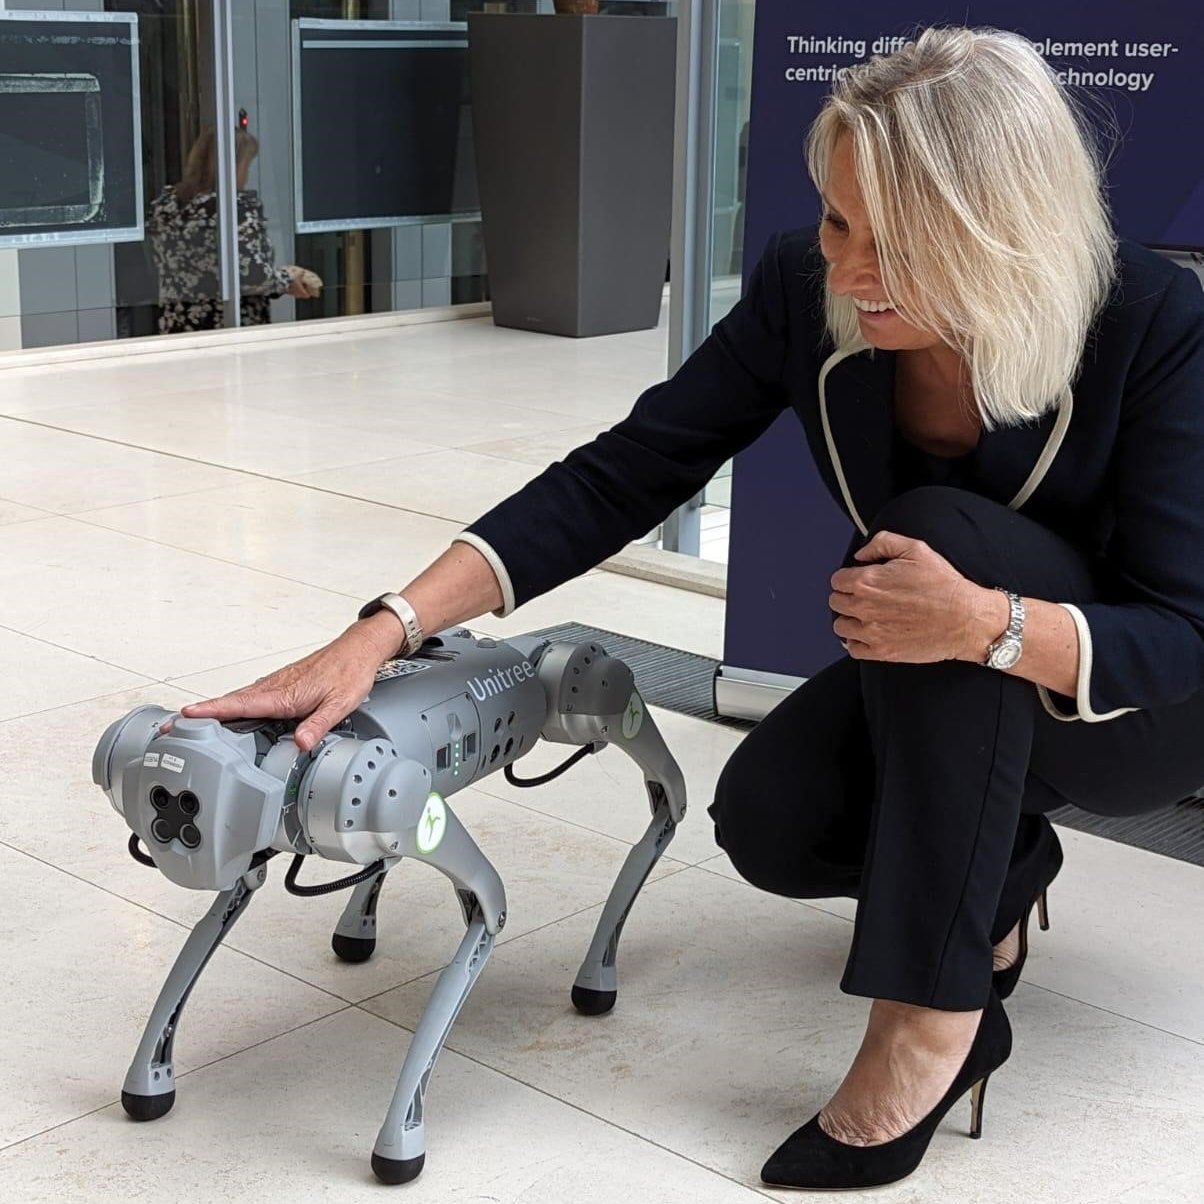 El titular del Ministerio de Justicia Jo Farrar se fotografió con el perro robot en un encuentro de innovaciones tecnológicas